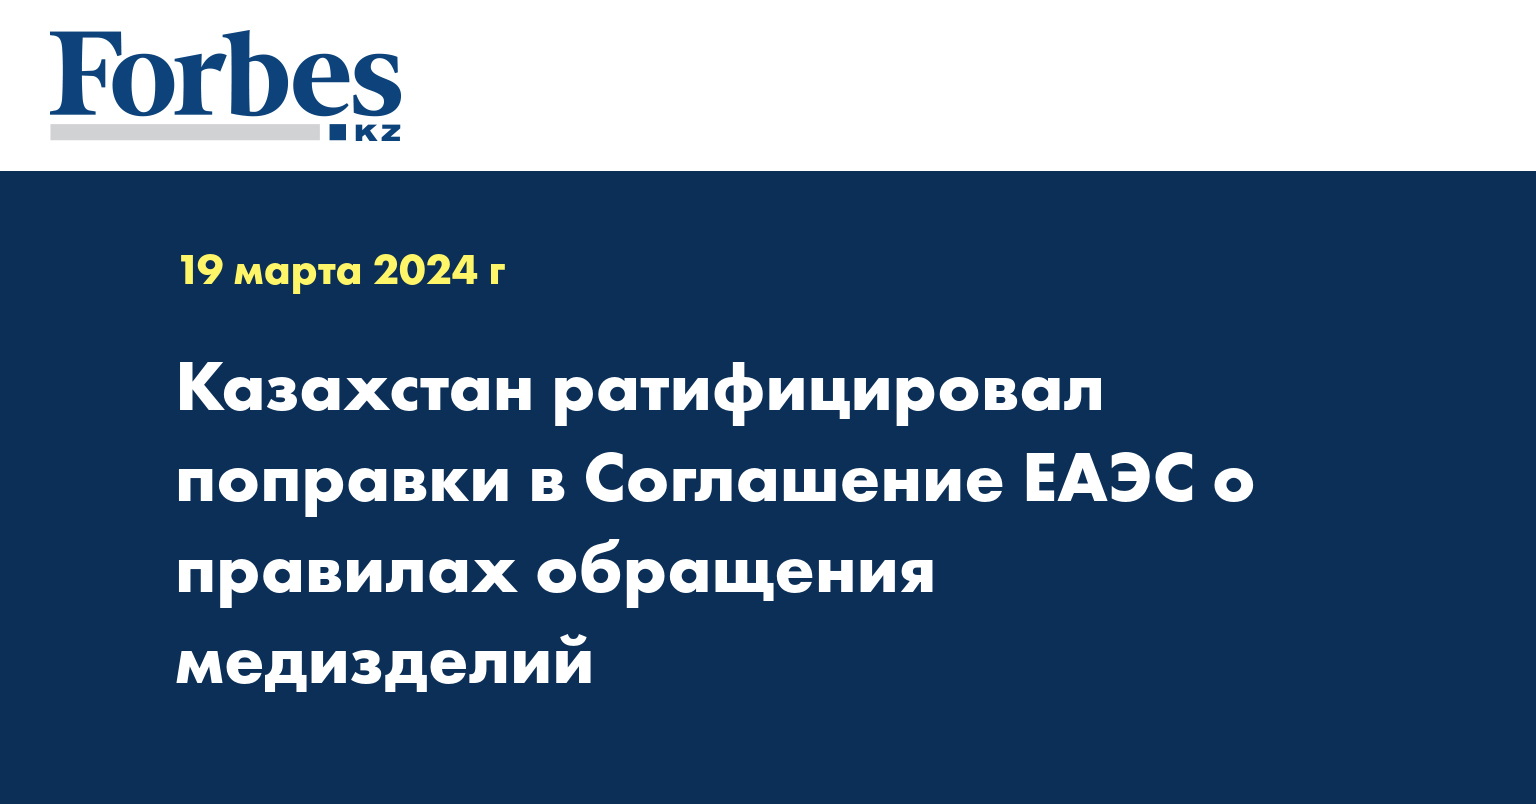 Казахстан ратифицировал поправки в Соглашение ЕАЭС о правилах обращения медизделий